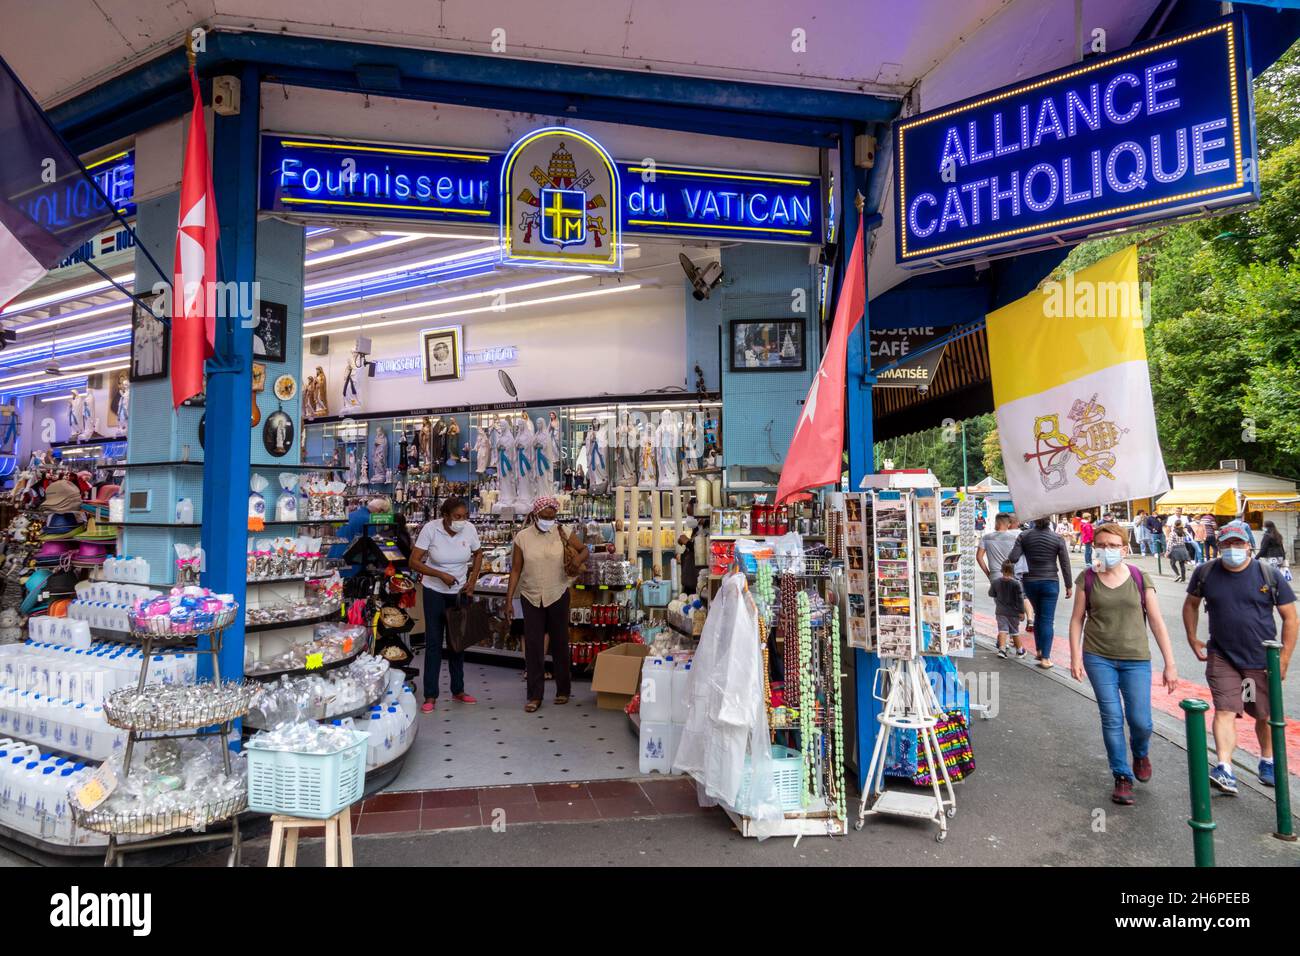 Negozio che vende statue e altri prodotti e regali cattolici a Lourdes, Francia Foto Stock